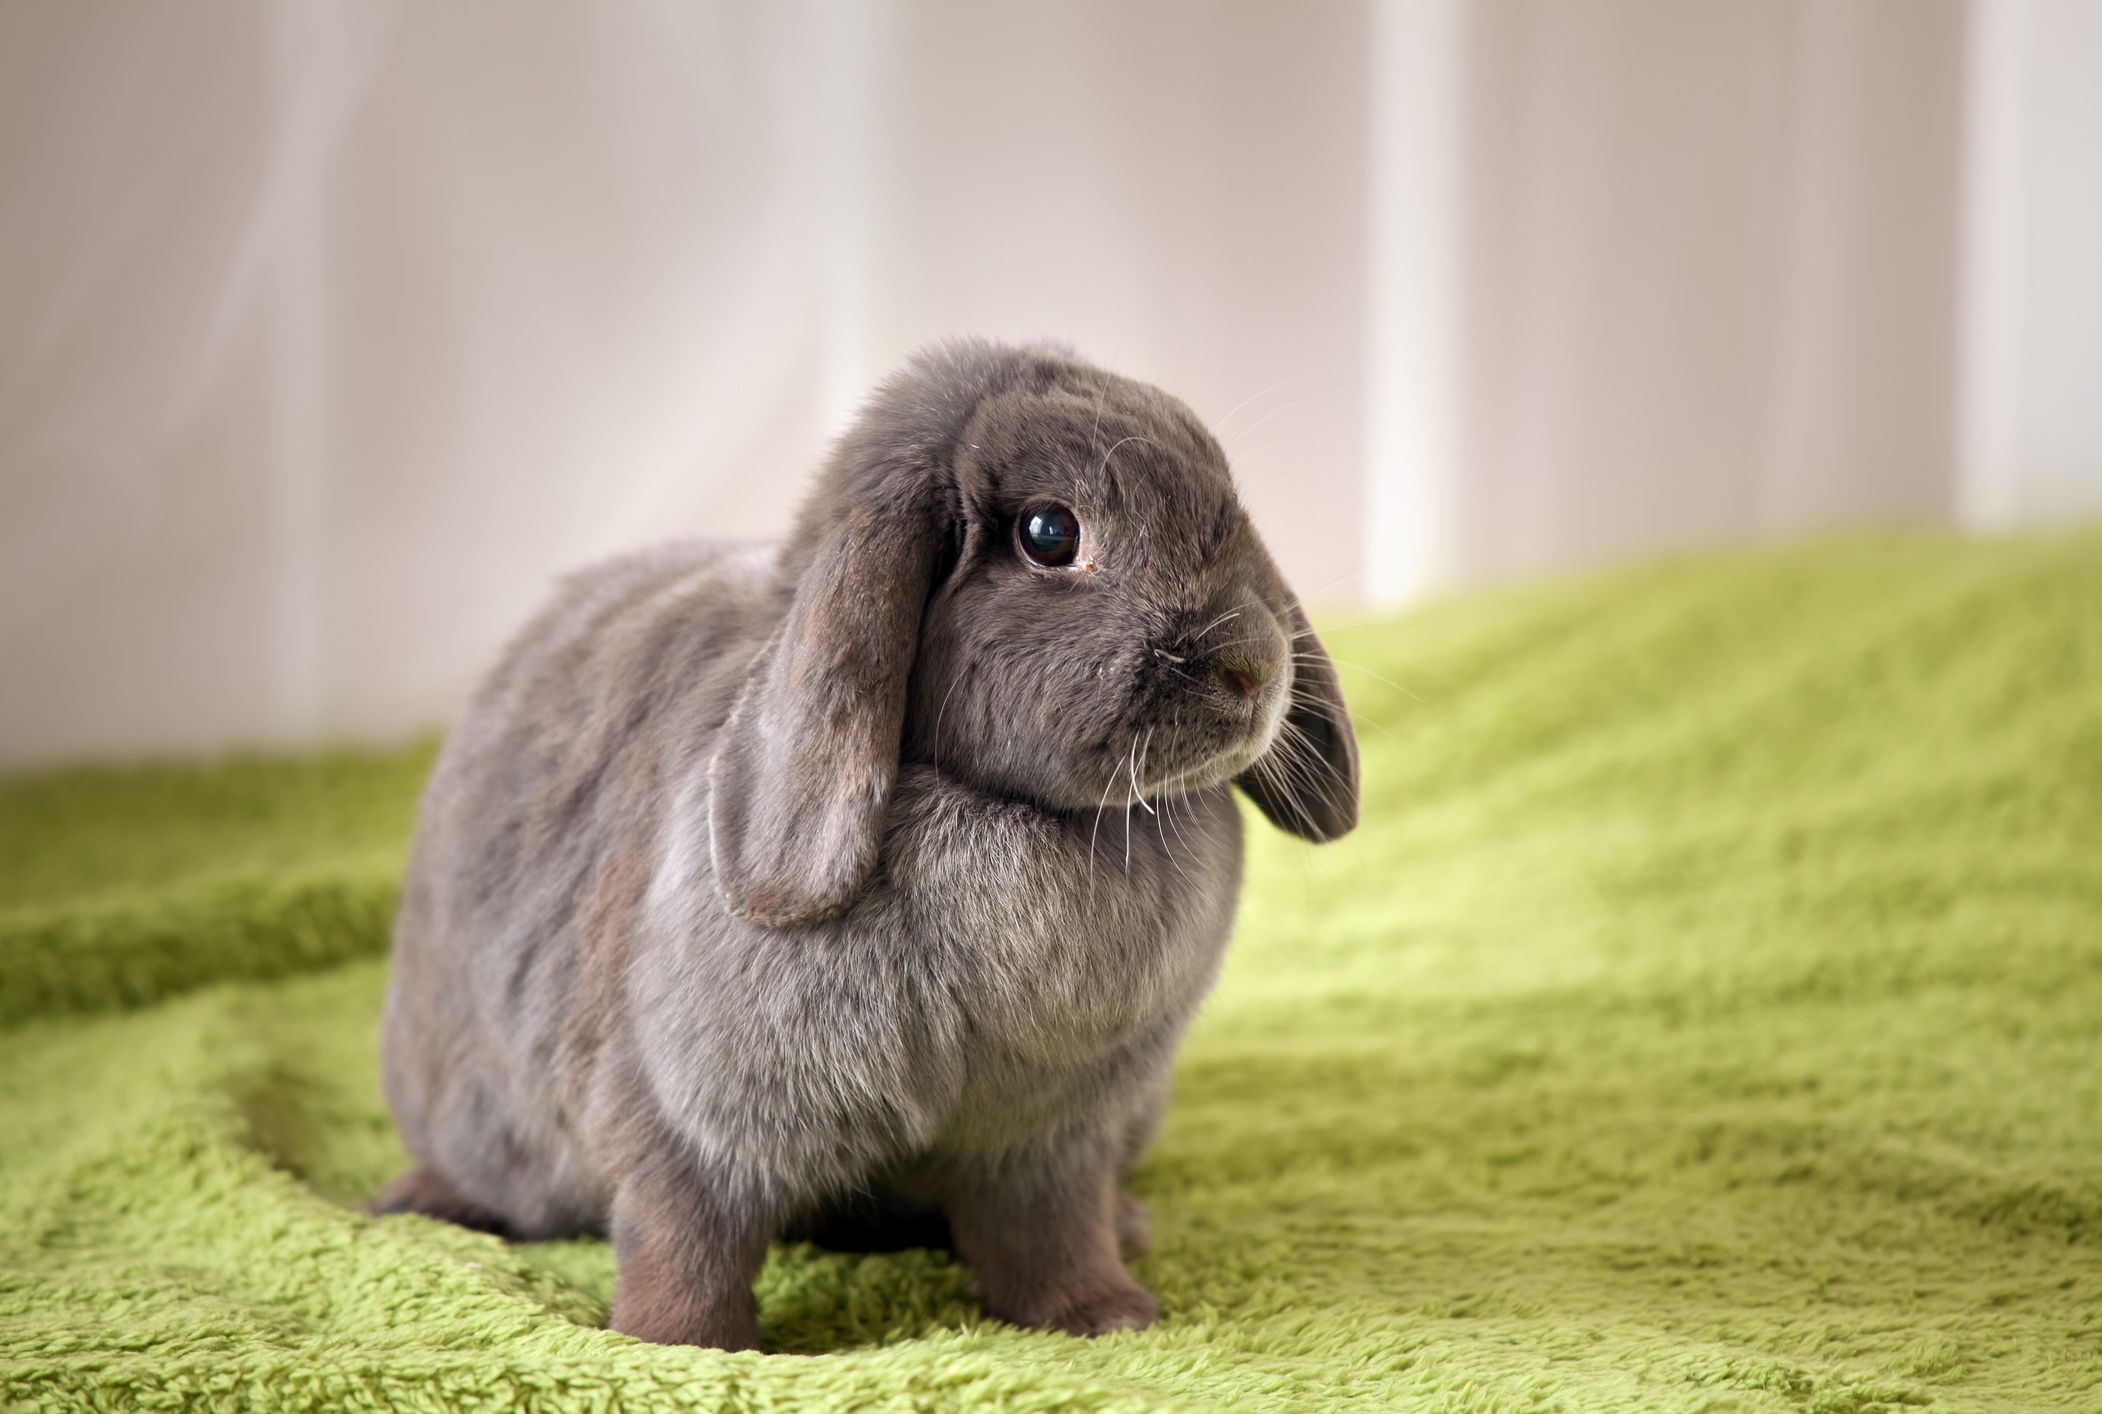 تصویر خرگوش خاکستری روی پتوی سبز